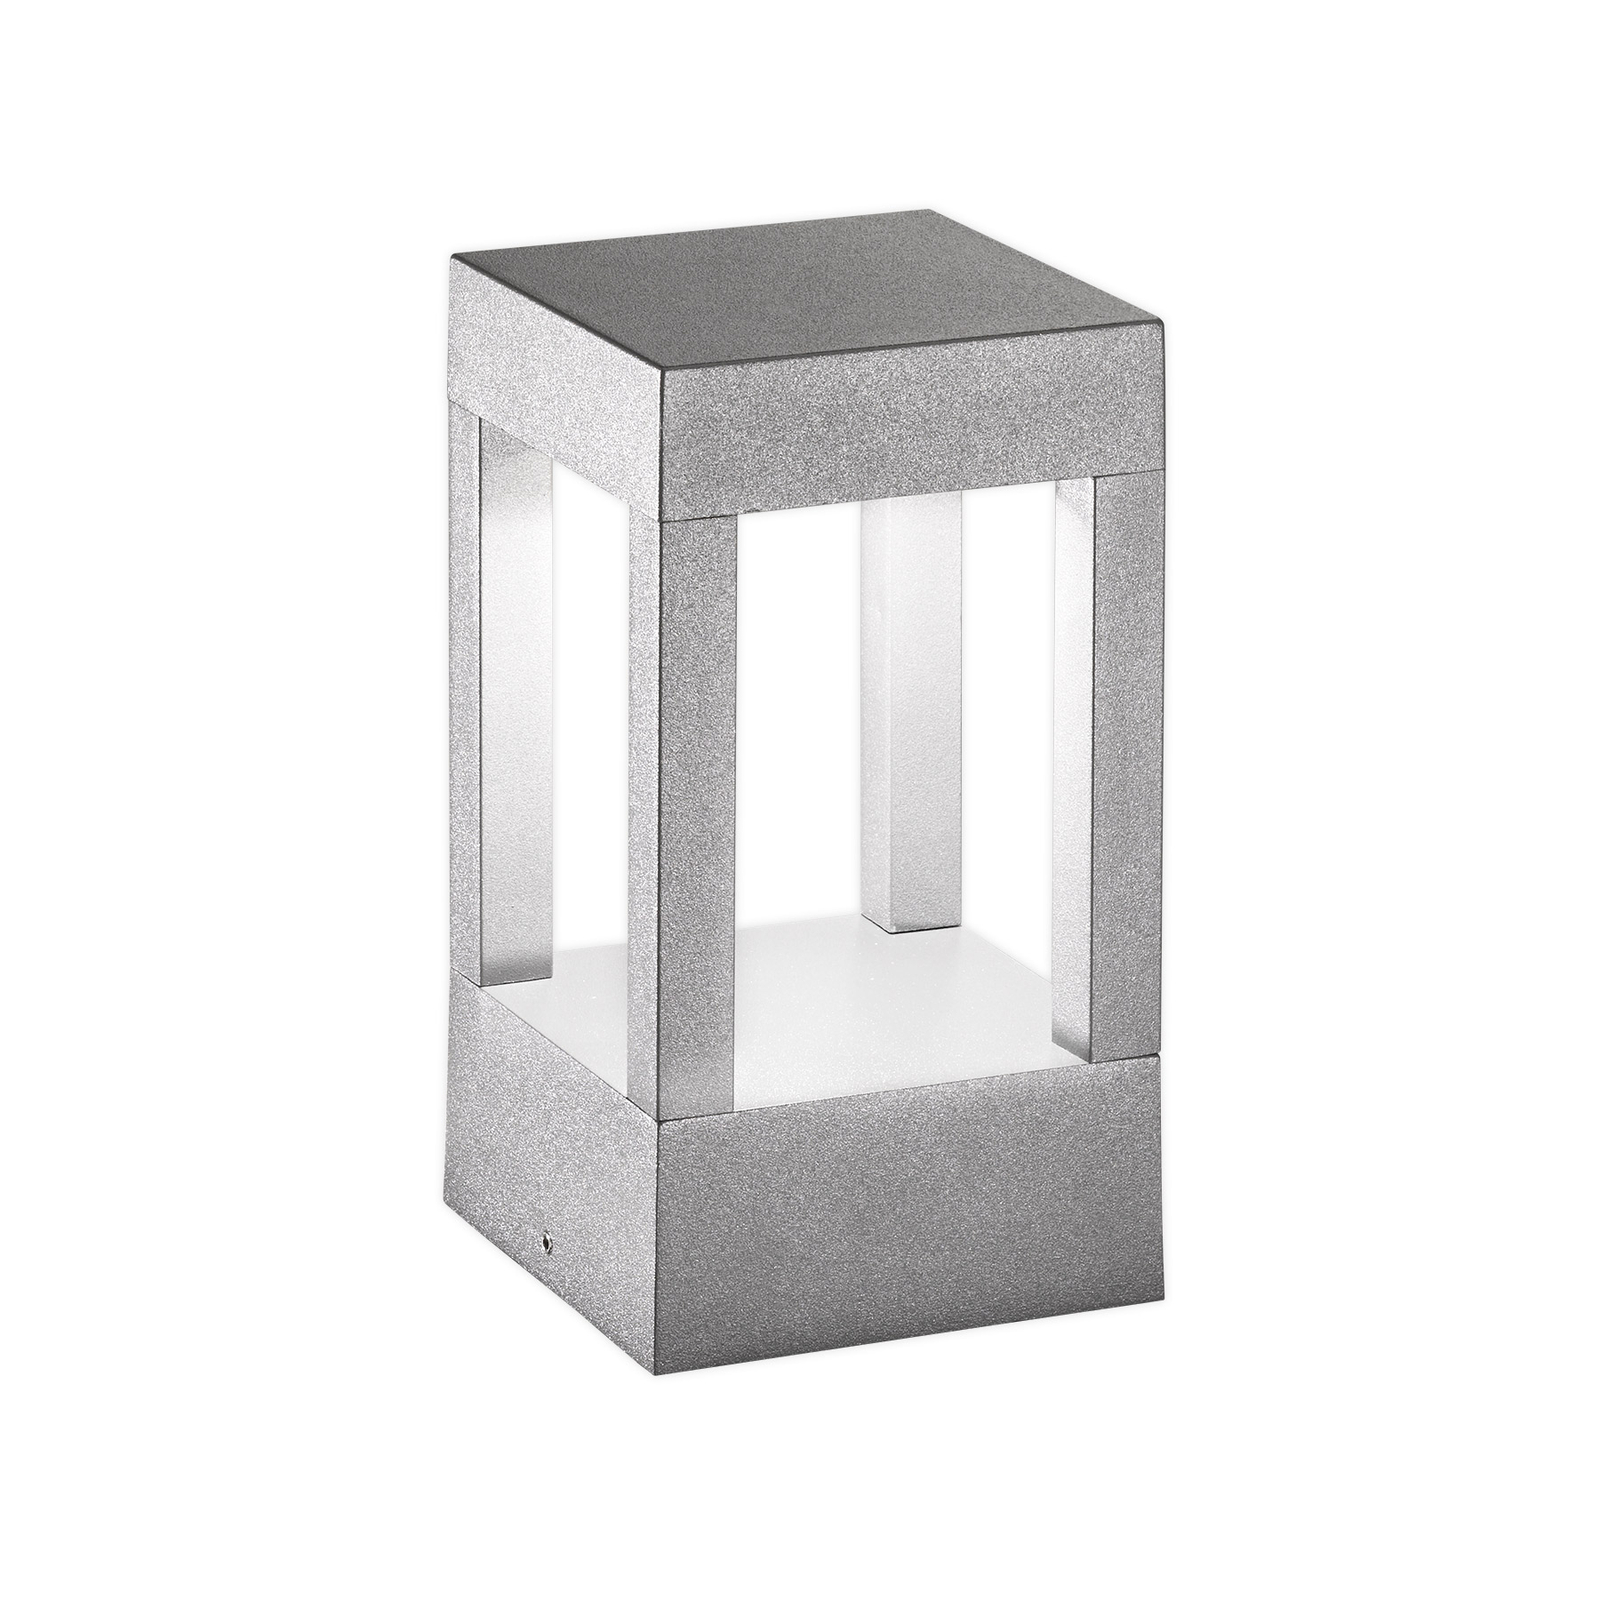 Egger York LED pedestal light grey, 20 cm